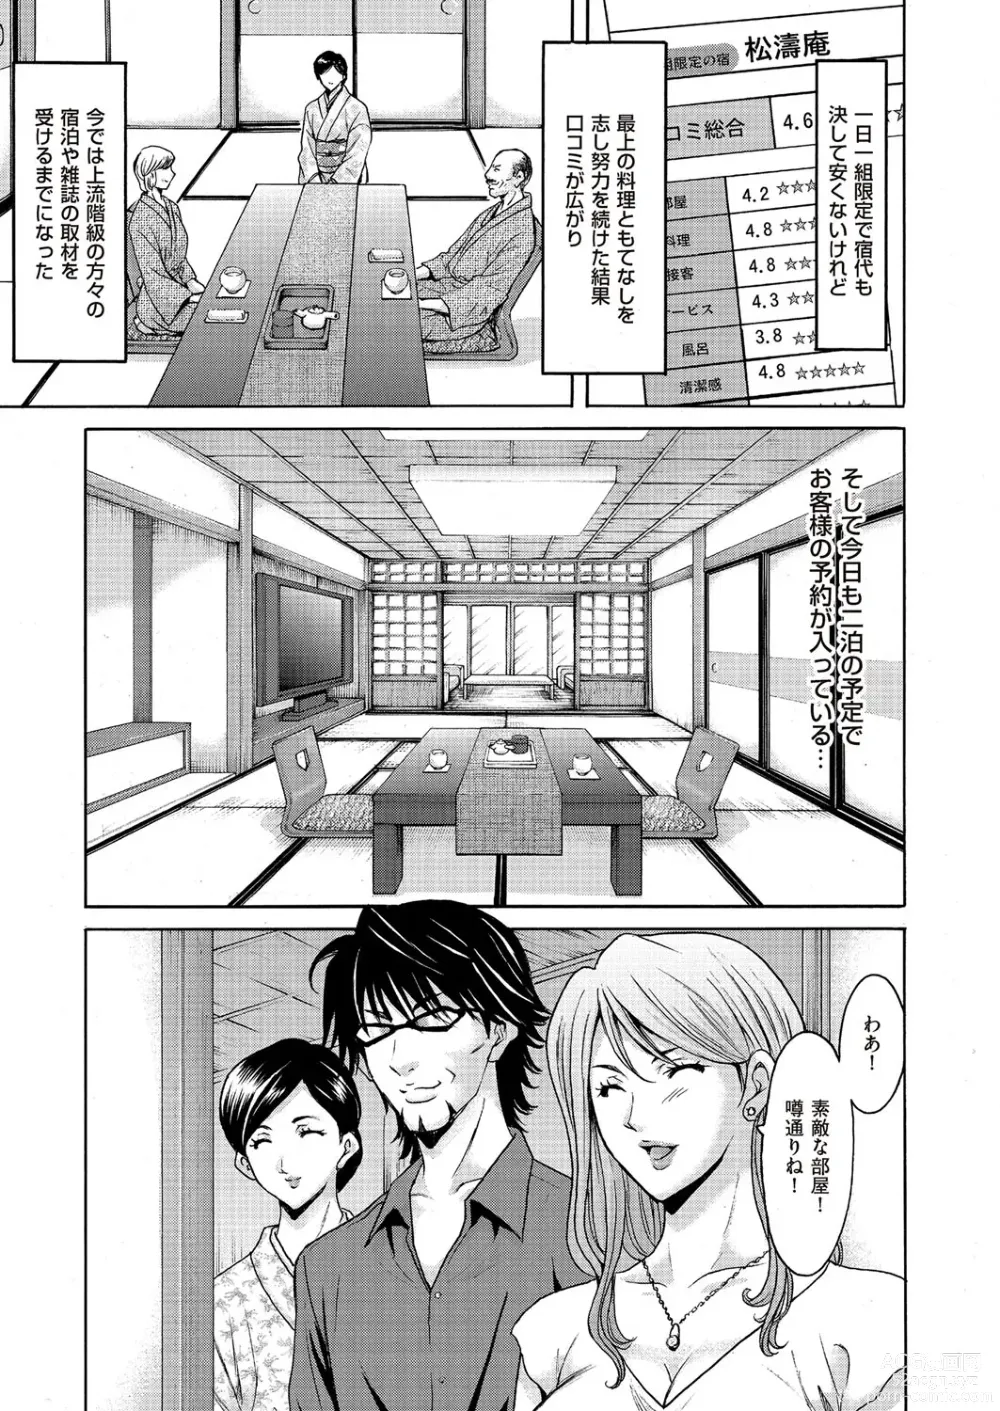 Page 4 of manga Kouin okasareta huuhu no kizuna Ch.1-3